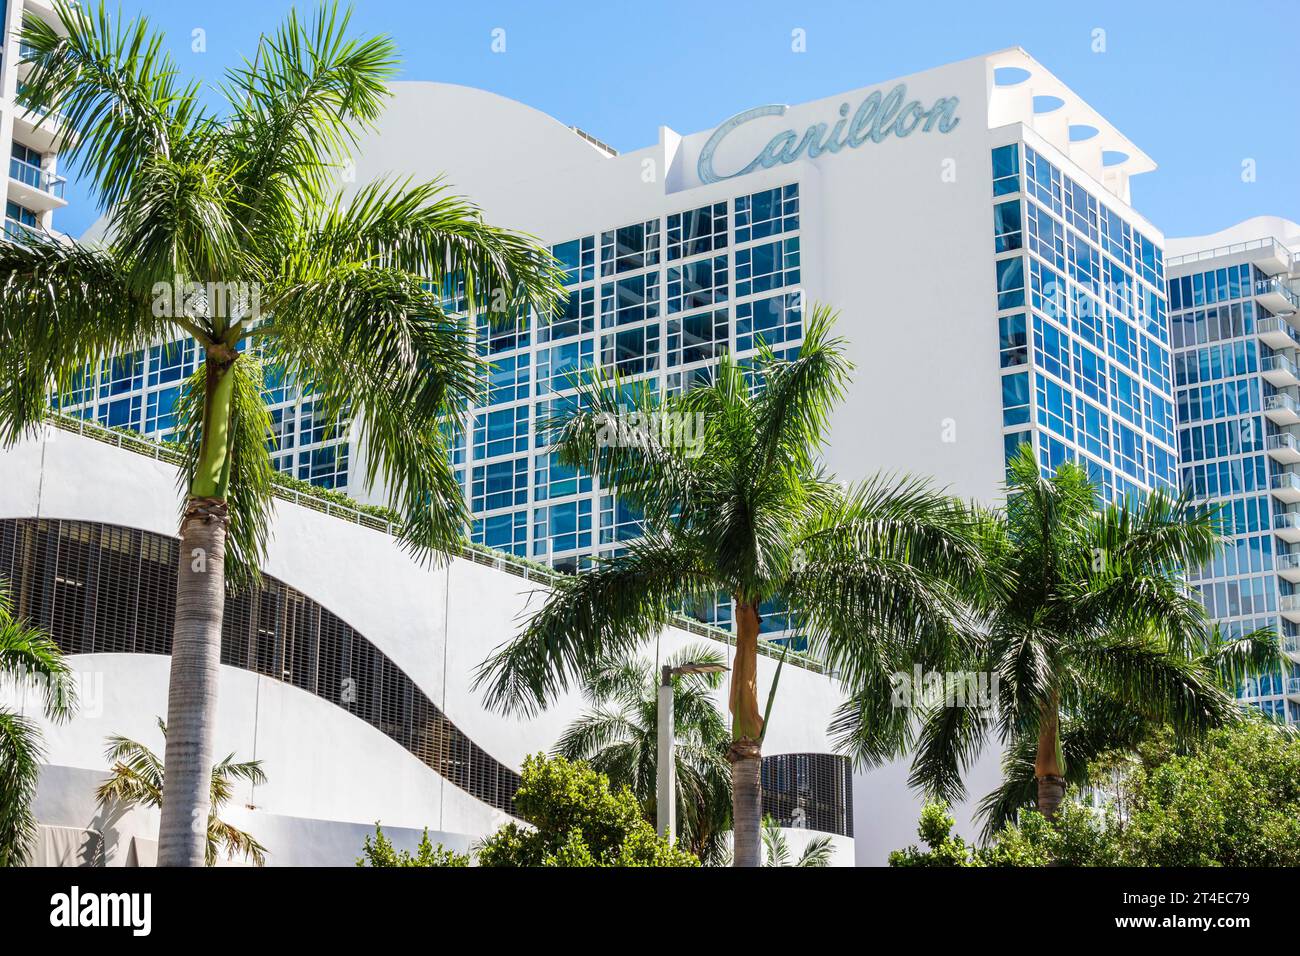 Miami Beach Florida,outside exterior,building front entrance hotel,Collins Avenue,Carillon Miami Wellness Resort sign,high rise skyscraper tall buildi Stock Photo